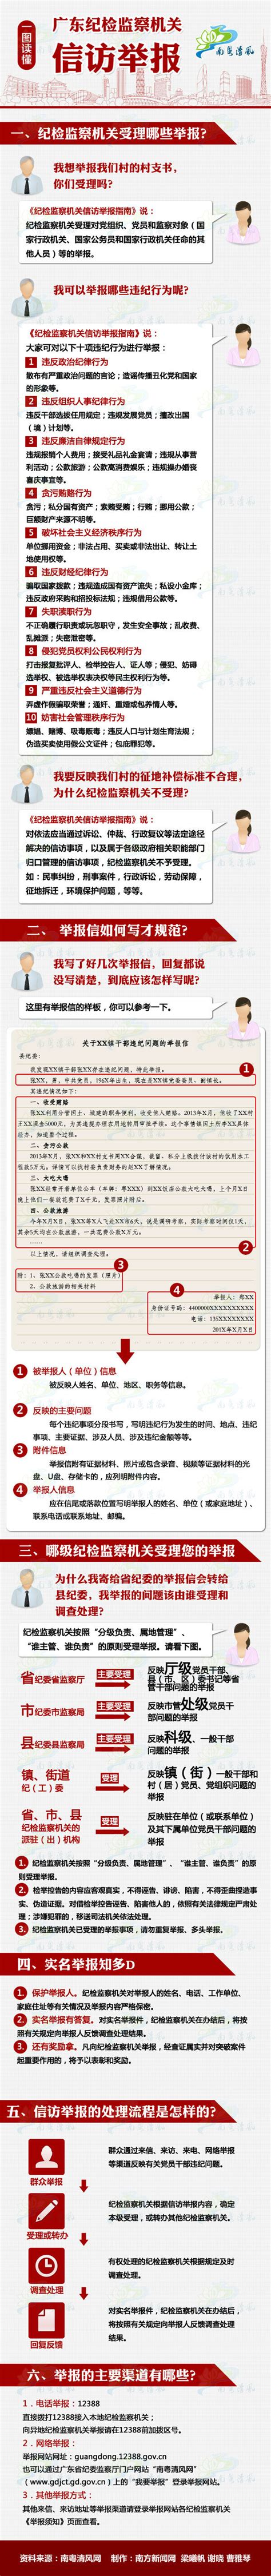 广东省纪委发布示意图 解读信访举报违纪行为流程_新浪新闻